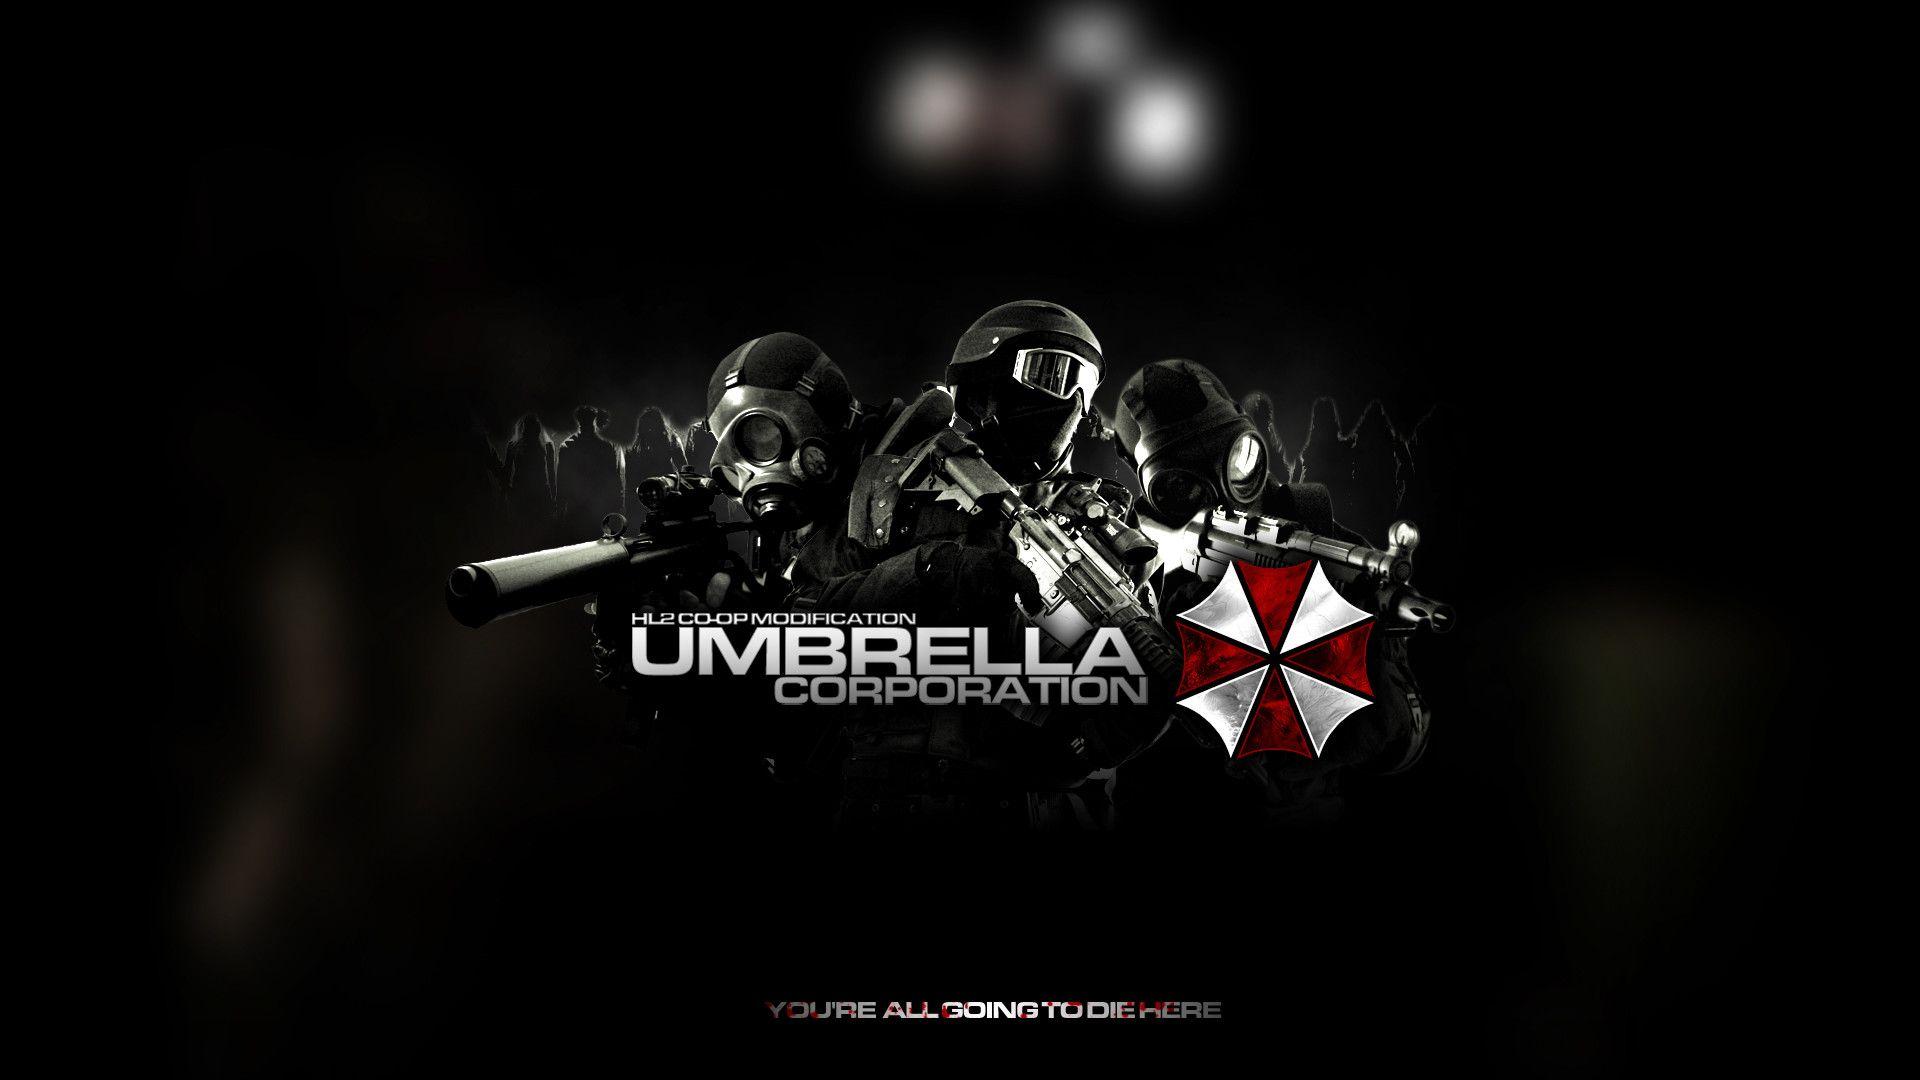 Umbrella Corporation Live Wallpaper 32 HD Wallpaper Free